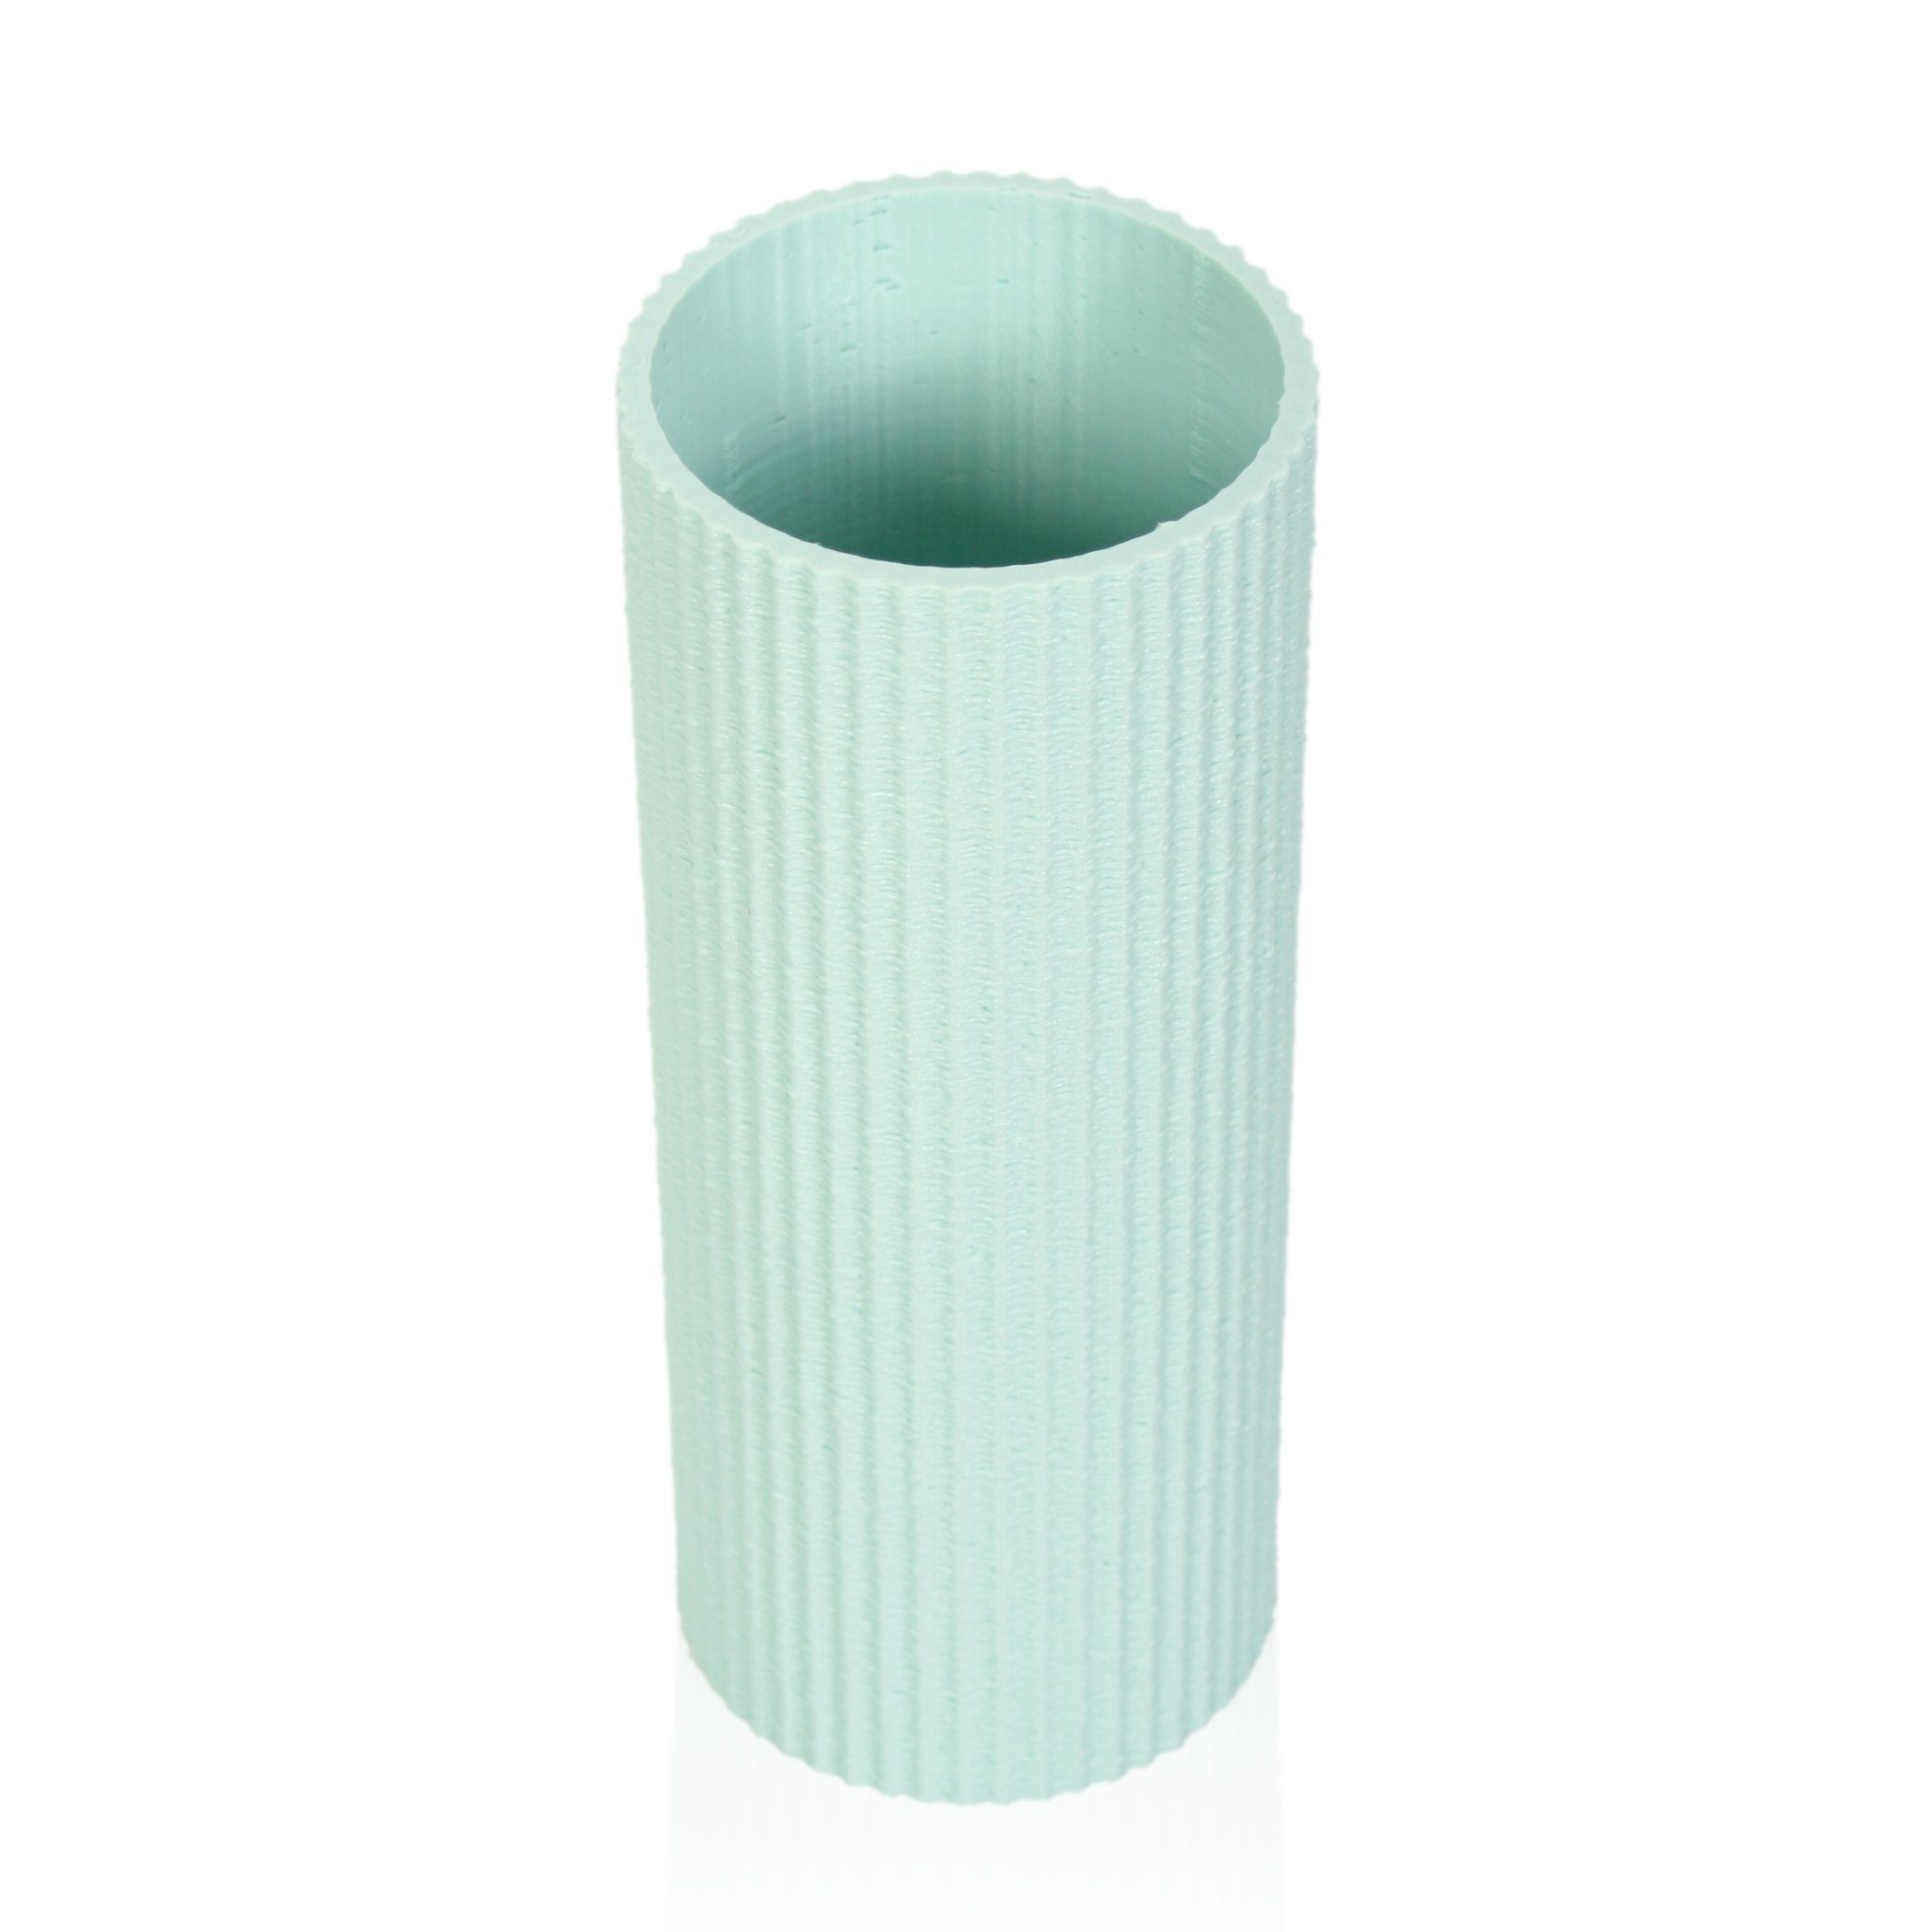 & Dekovase Blumenvase bruchsicher Vase Dekorative Rohstoffen; aus – Green nachwachsenden Feder wasserdicht aus Designer Water Bio-Kunststoff, Kreative